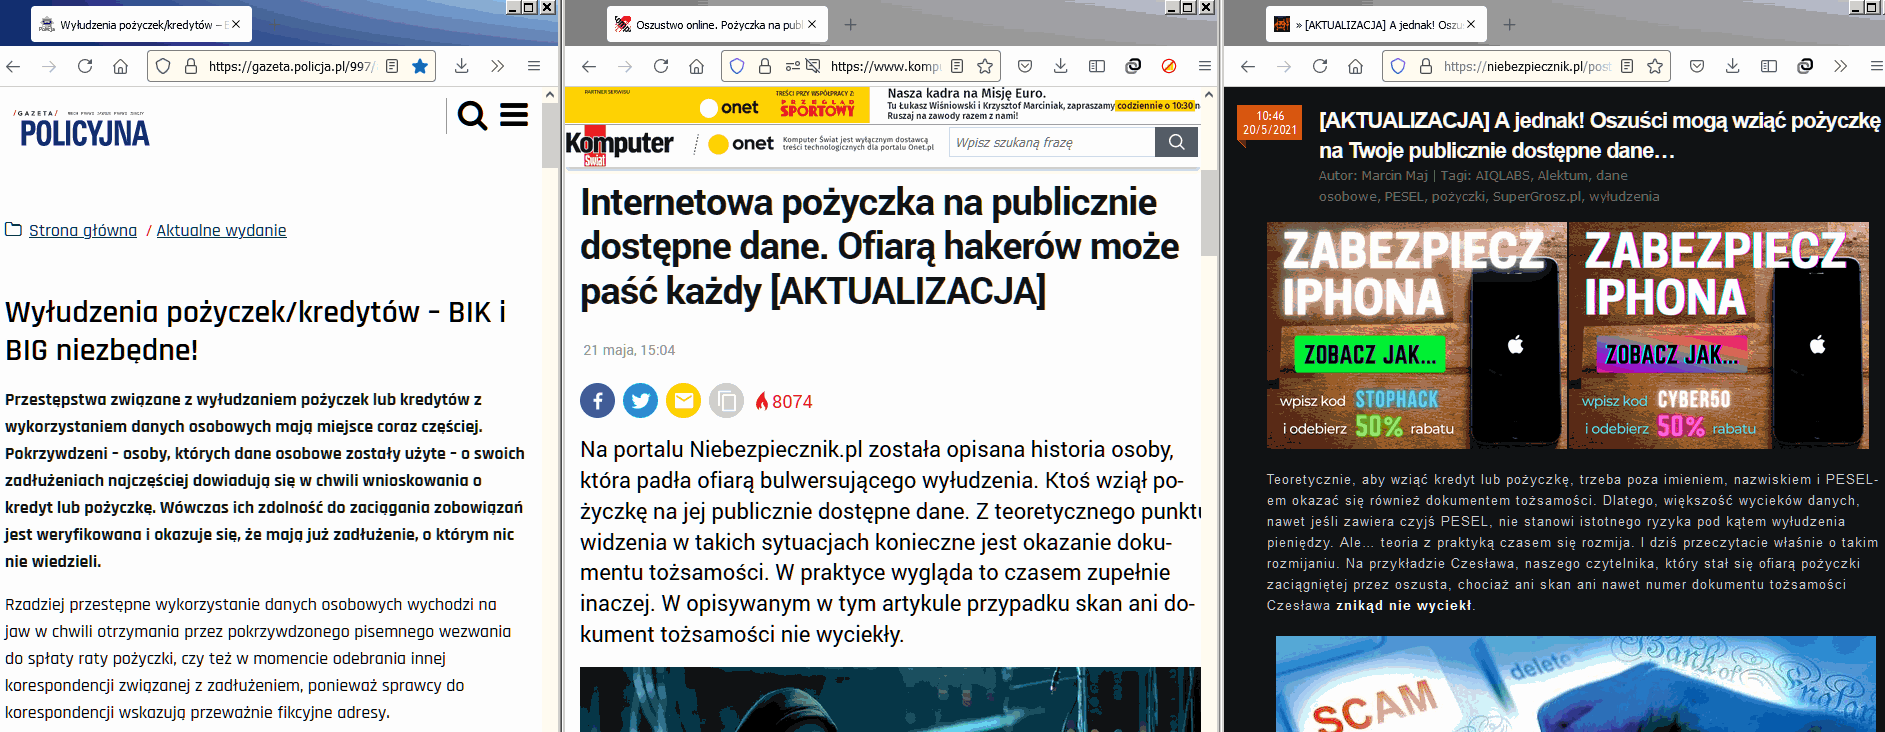 Komputer Świat wtóruje Niebezpiecznikowi: Supergrosz.pl wykorzystywany przez oszustów zaciągających pożyczki na publicznie dostępne dane.